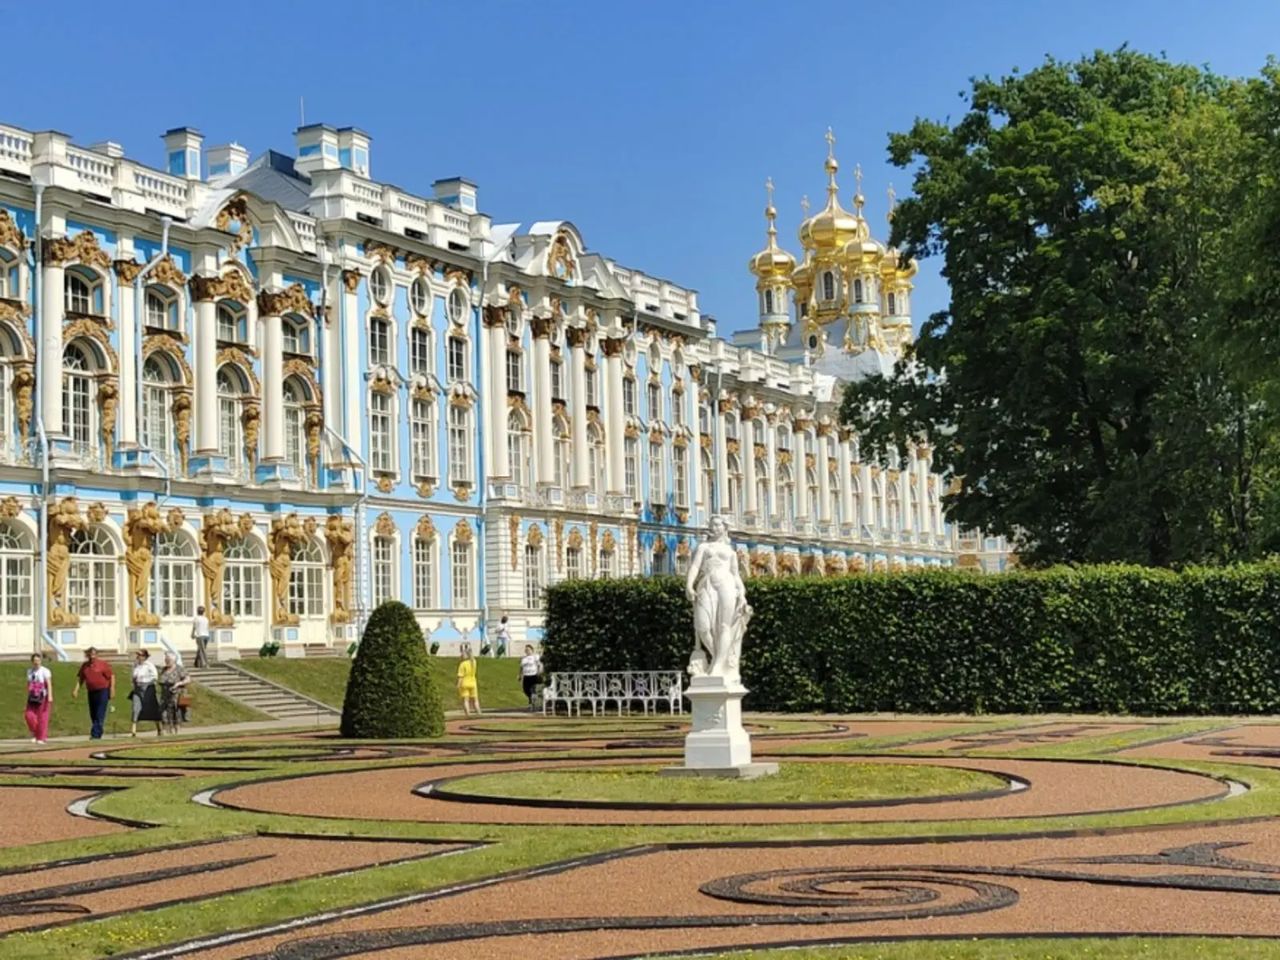 Екатерининский дворец, парк и Царское Село | Цена 3411₽, отзывы, описание экскурсии